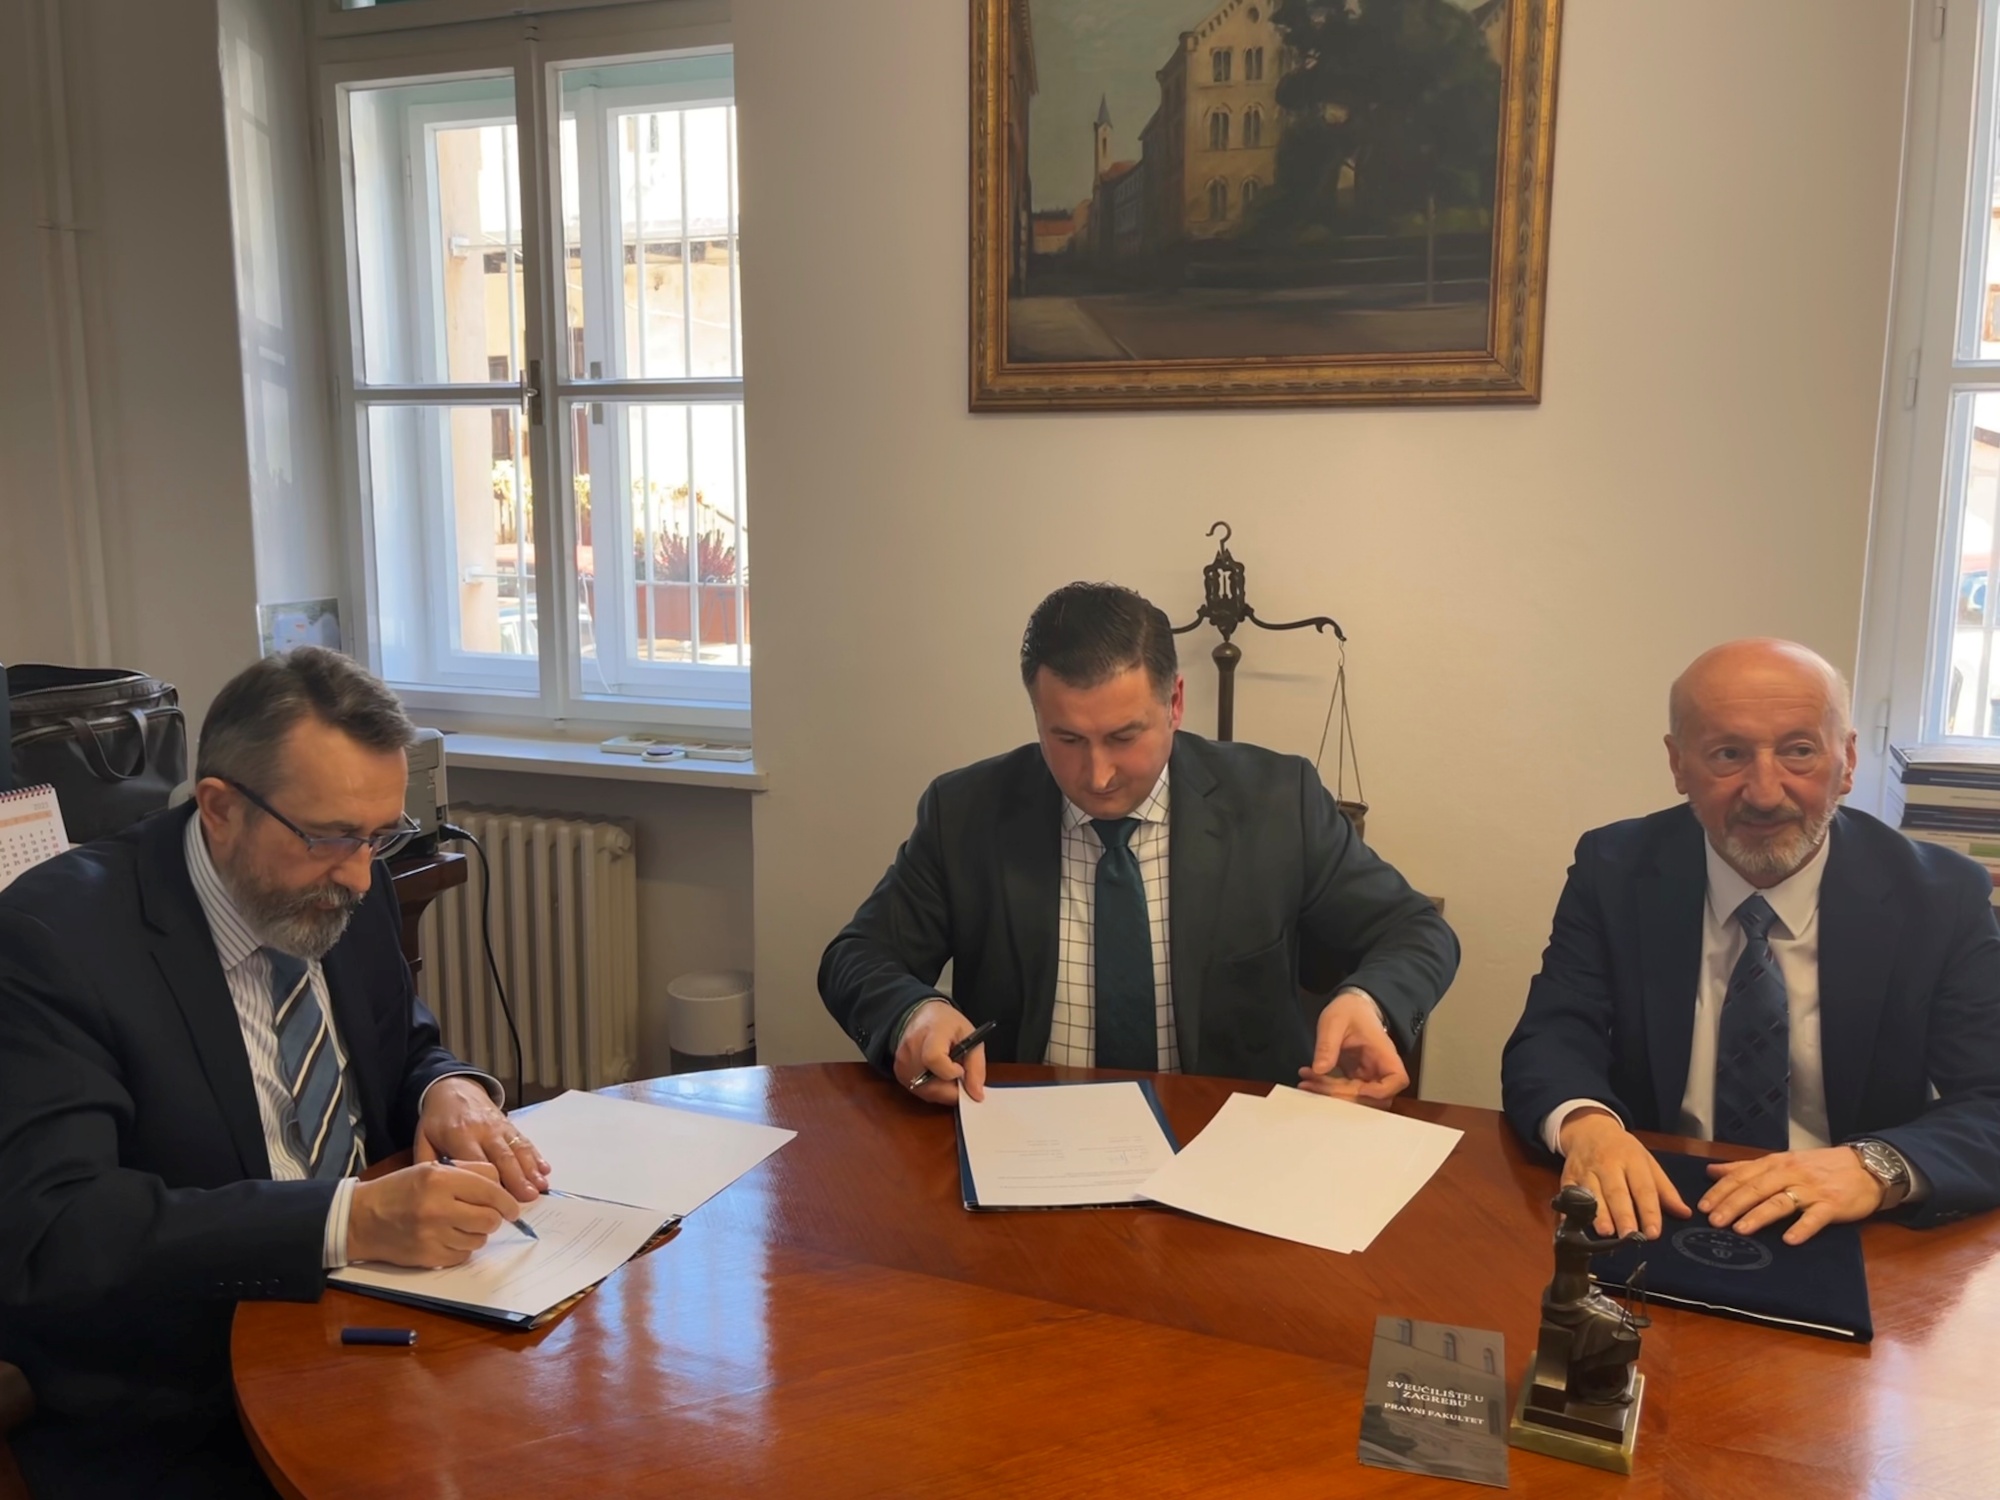 Potpisan sporazum o akademskoj razmjeni između Pravnog fakulteta Sveučilišta u Zagrebu i Pravnog fakulteta Sveučilišta u Tetovu